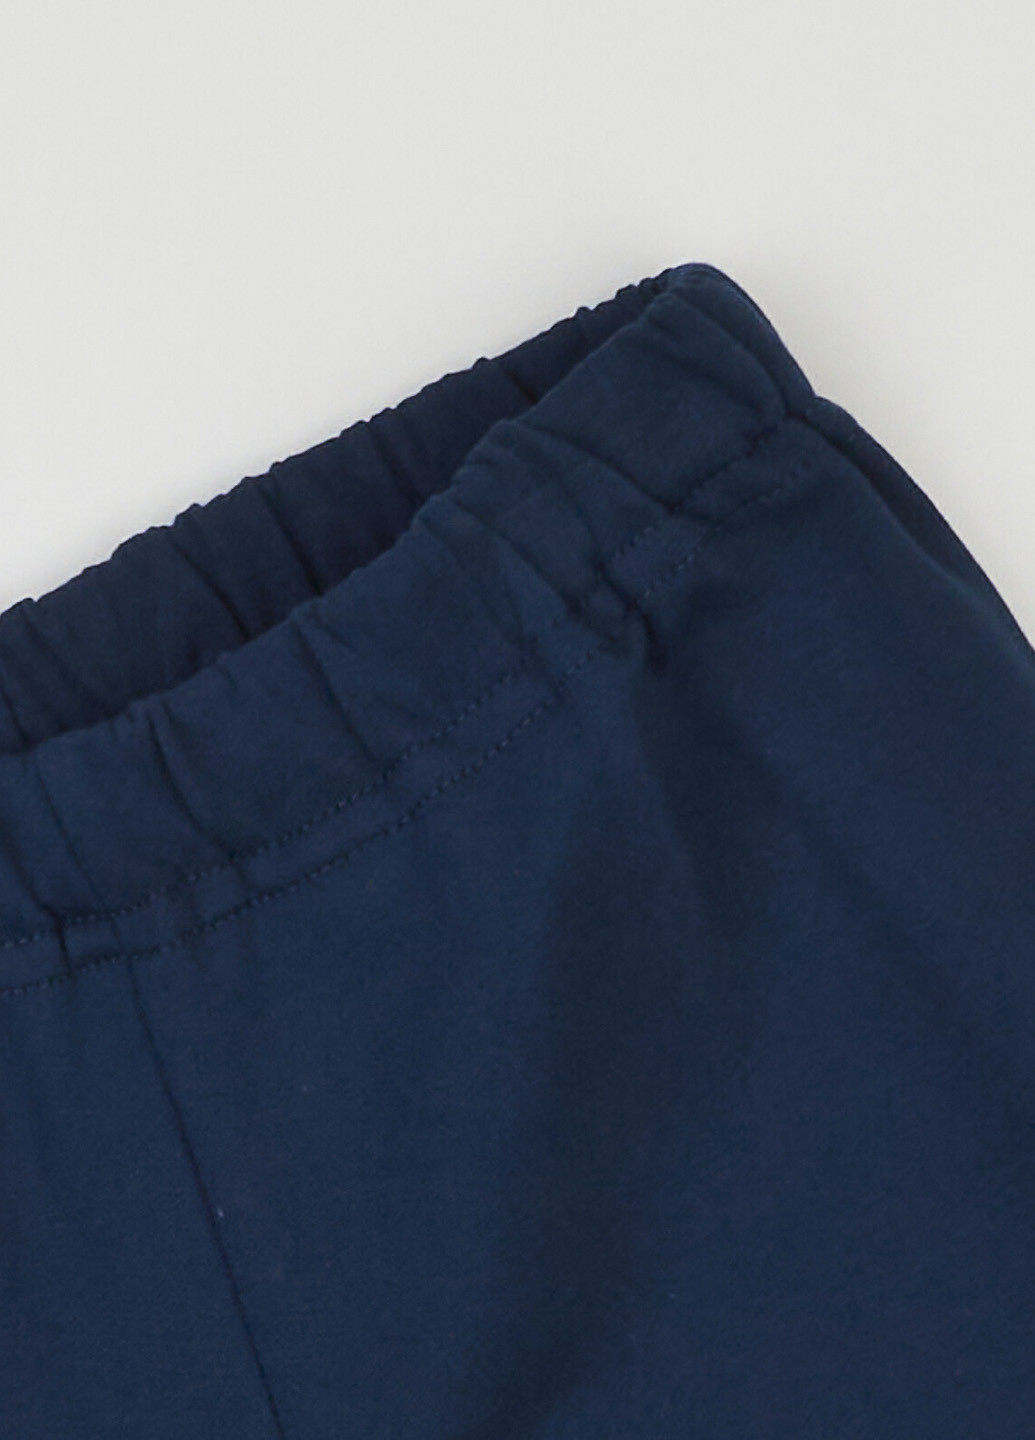 Индиго всесезон пижама (свитшот, брюки) свитшот + брюки Ляля